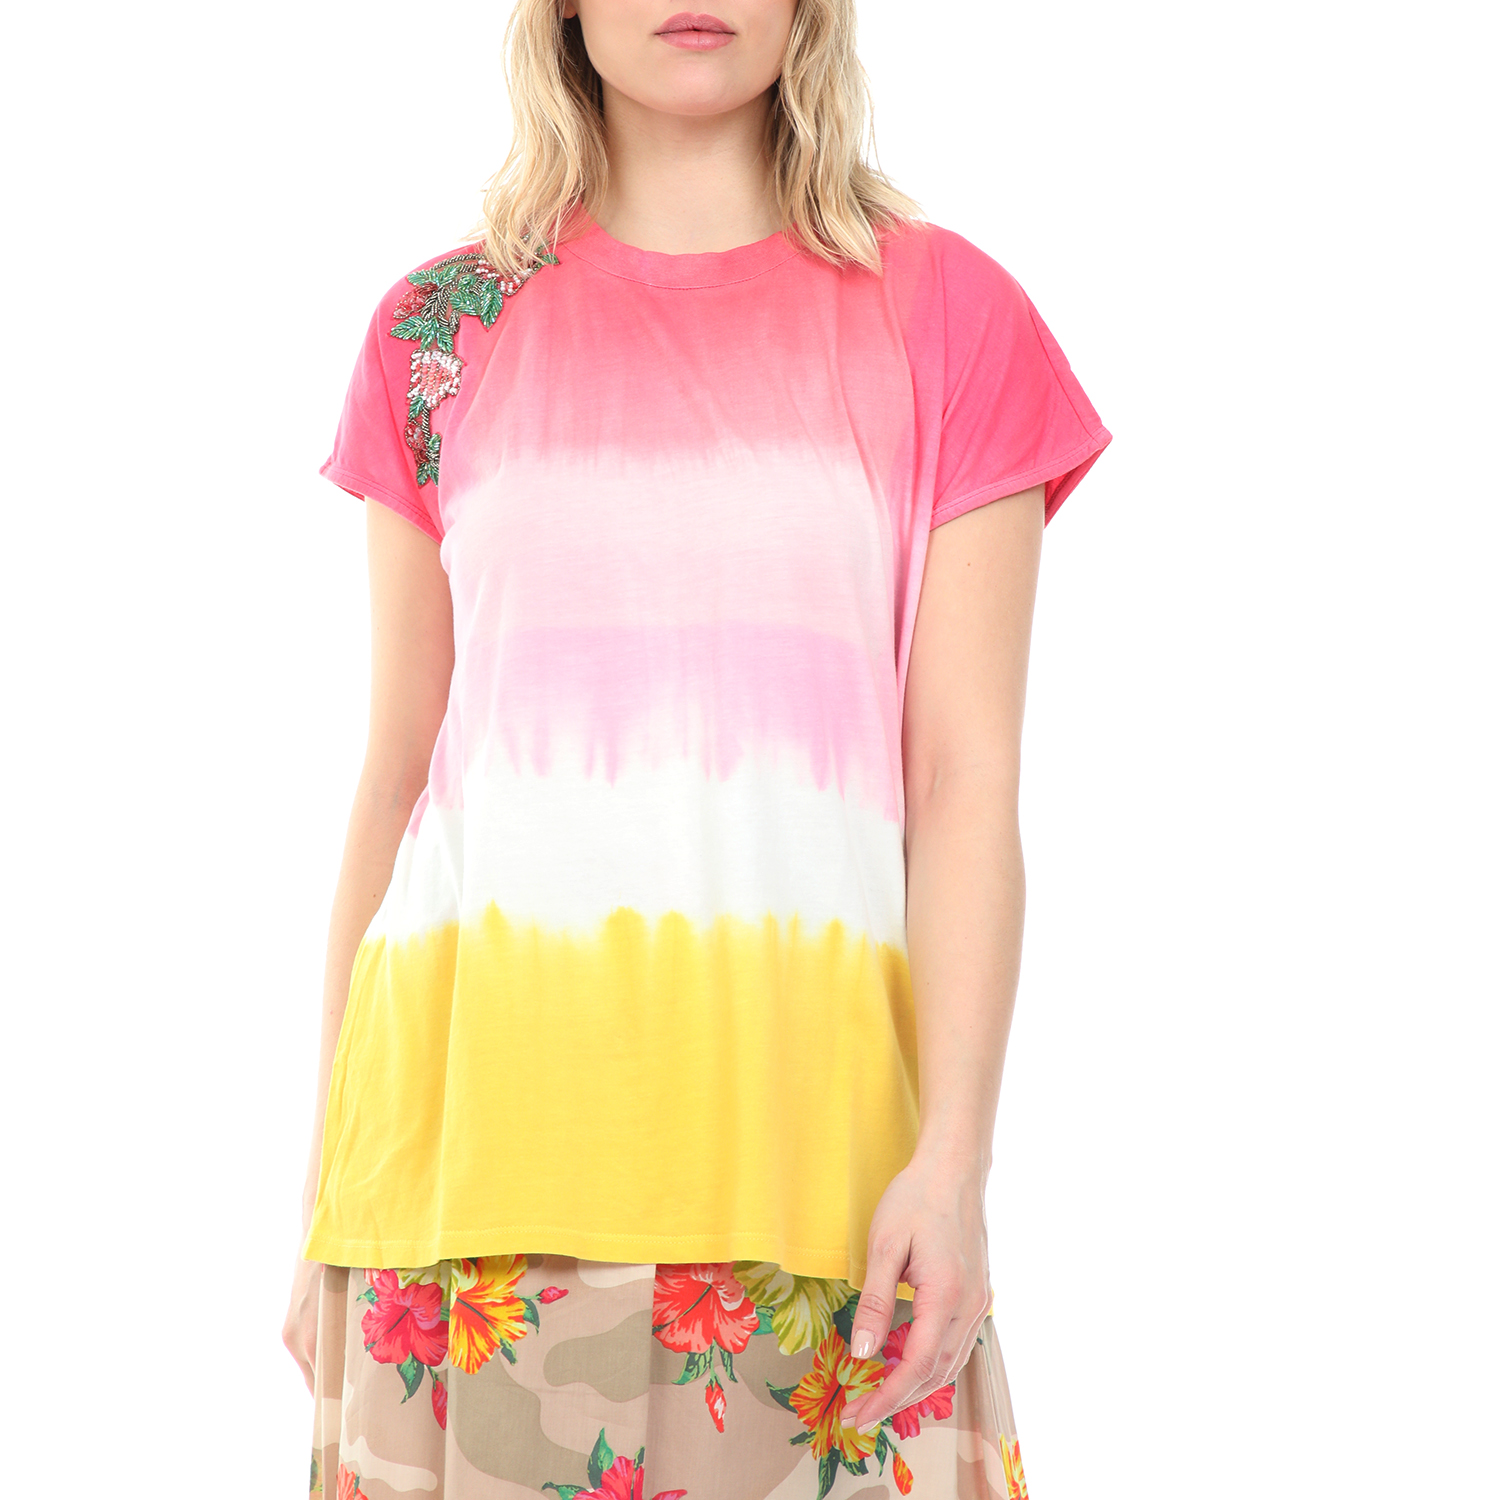 Γυναικεία/Ρούχα/Μπλούζες/Κοντομάνικες TWIN-SET - Γυναικεία μπλούζα TWIN-SET ροζ κίτρινη